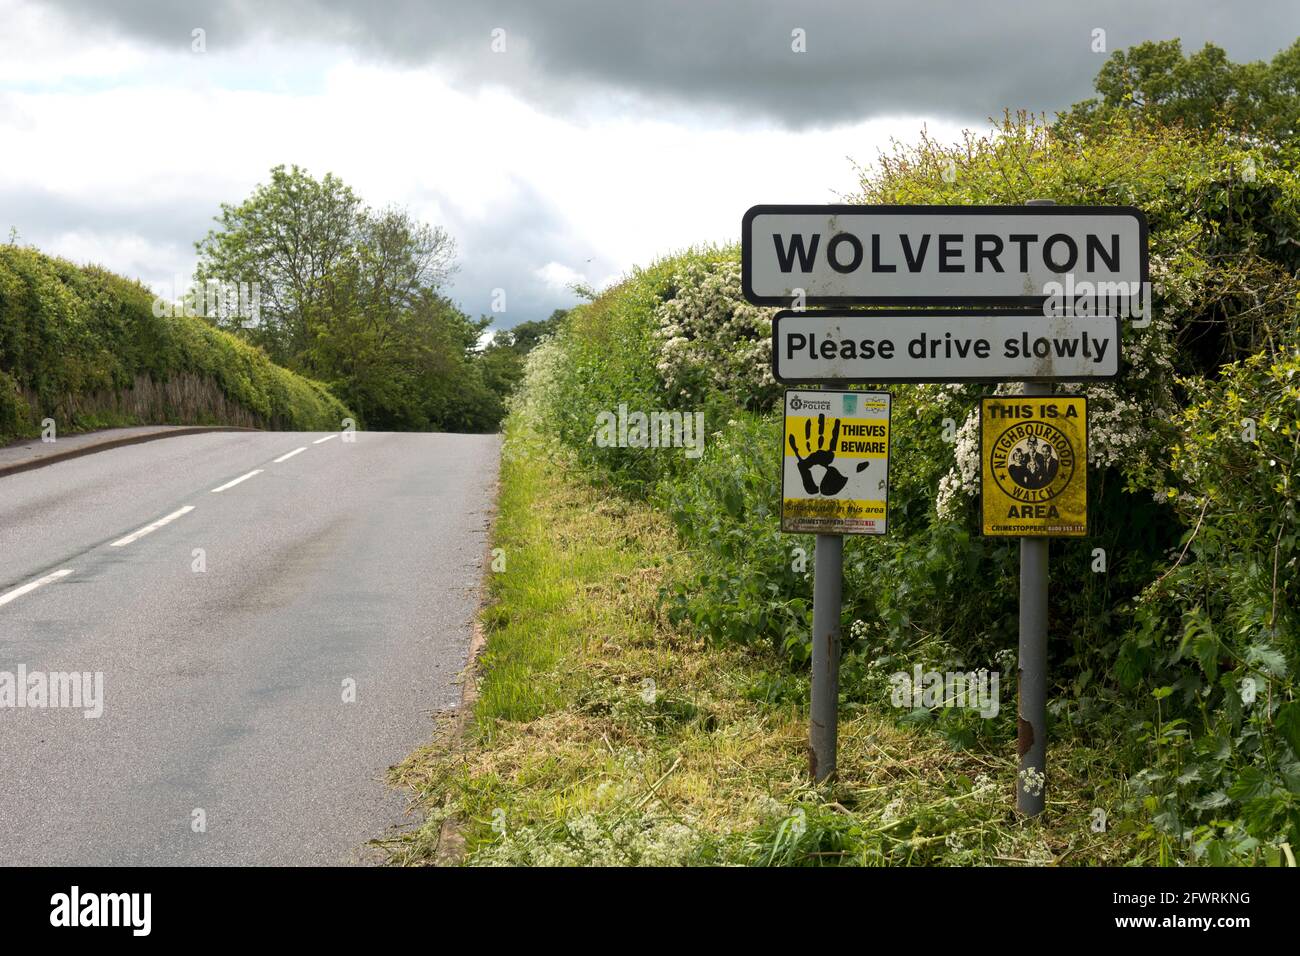 Wolverton village sign, Warwickshire, England, UK Stock Photo